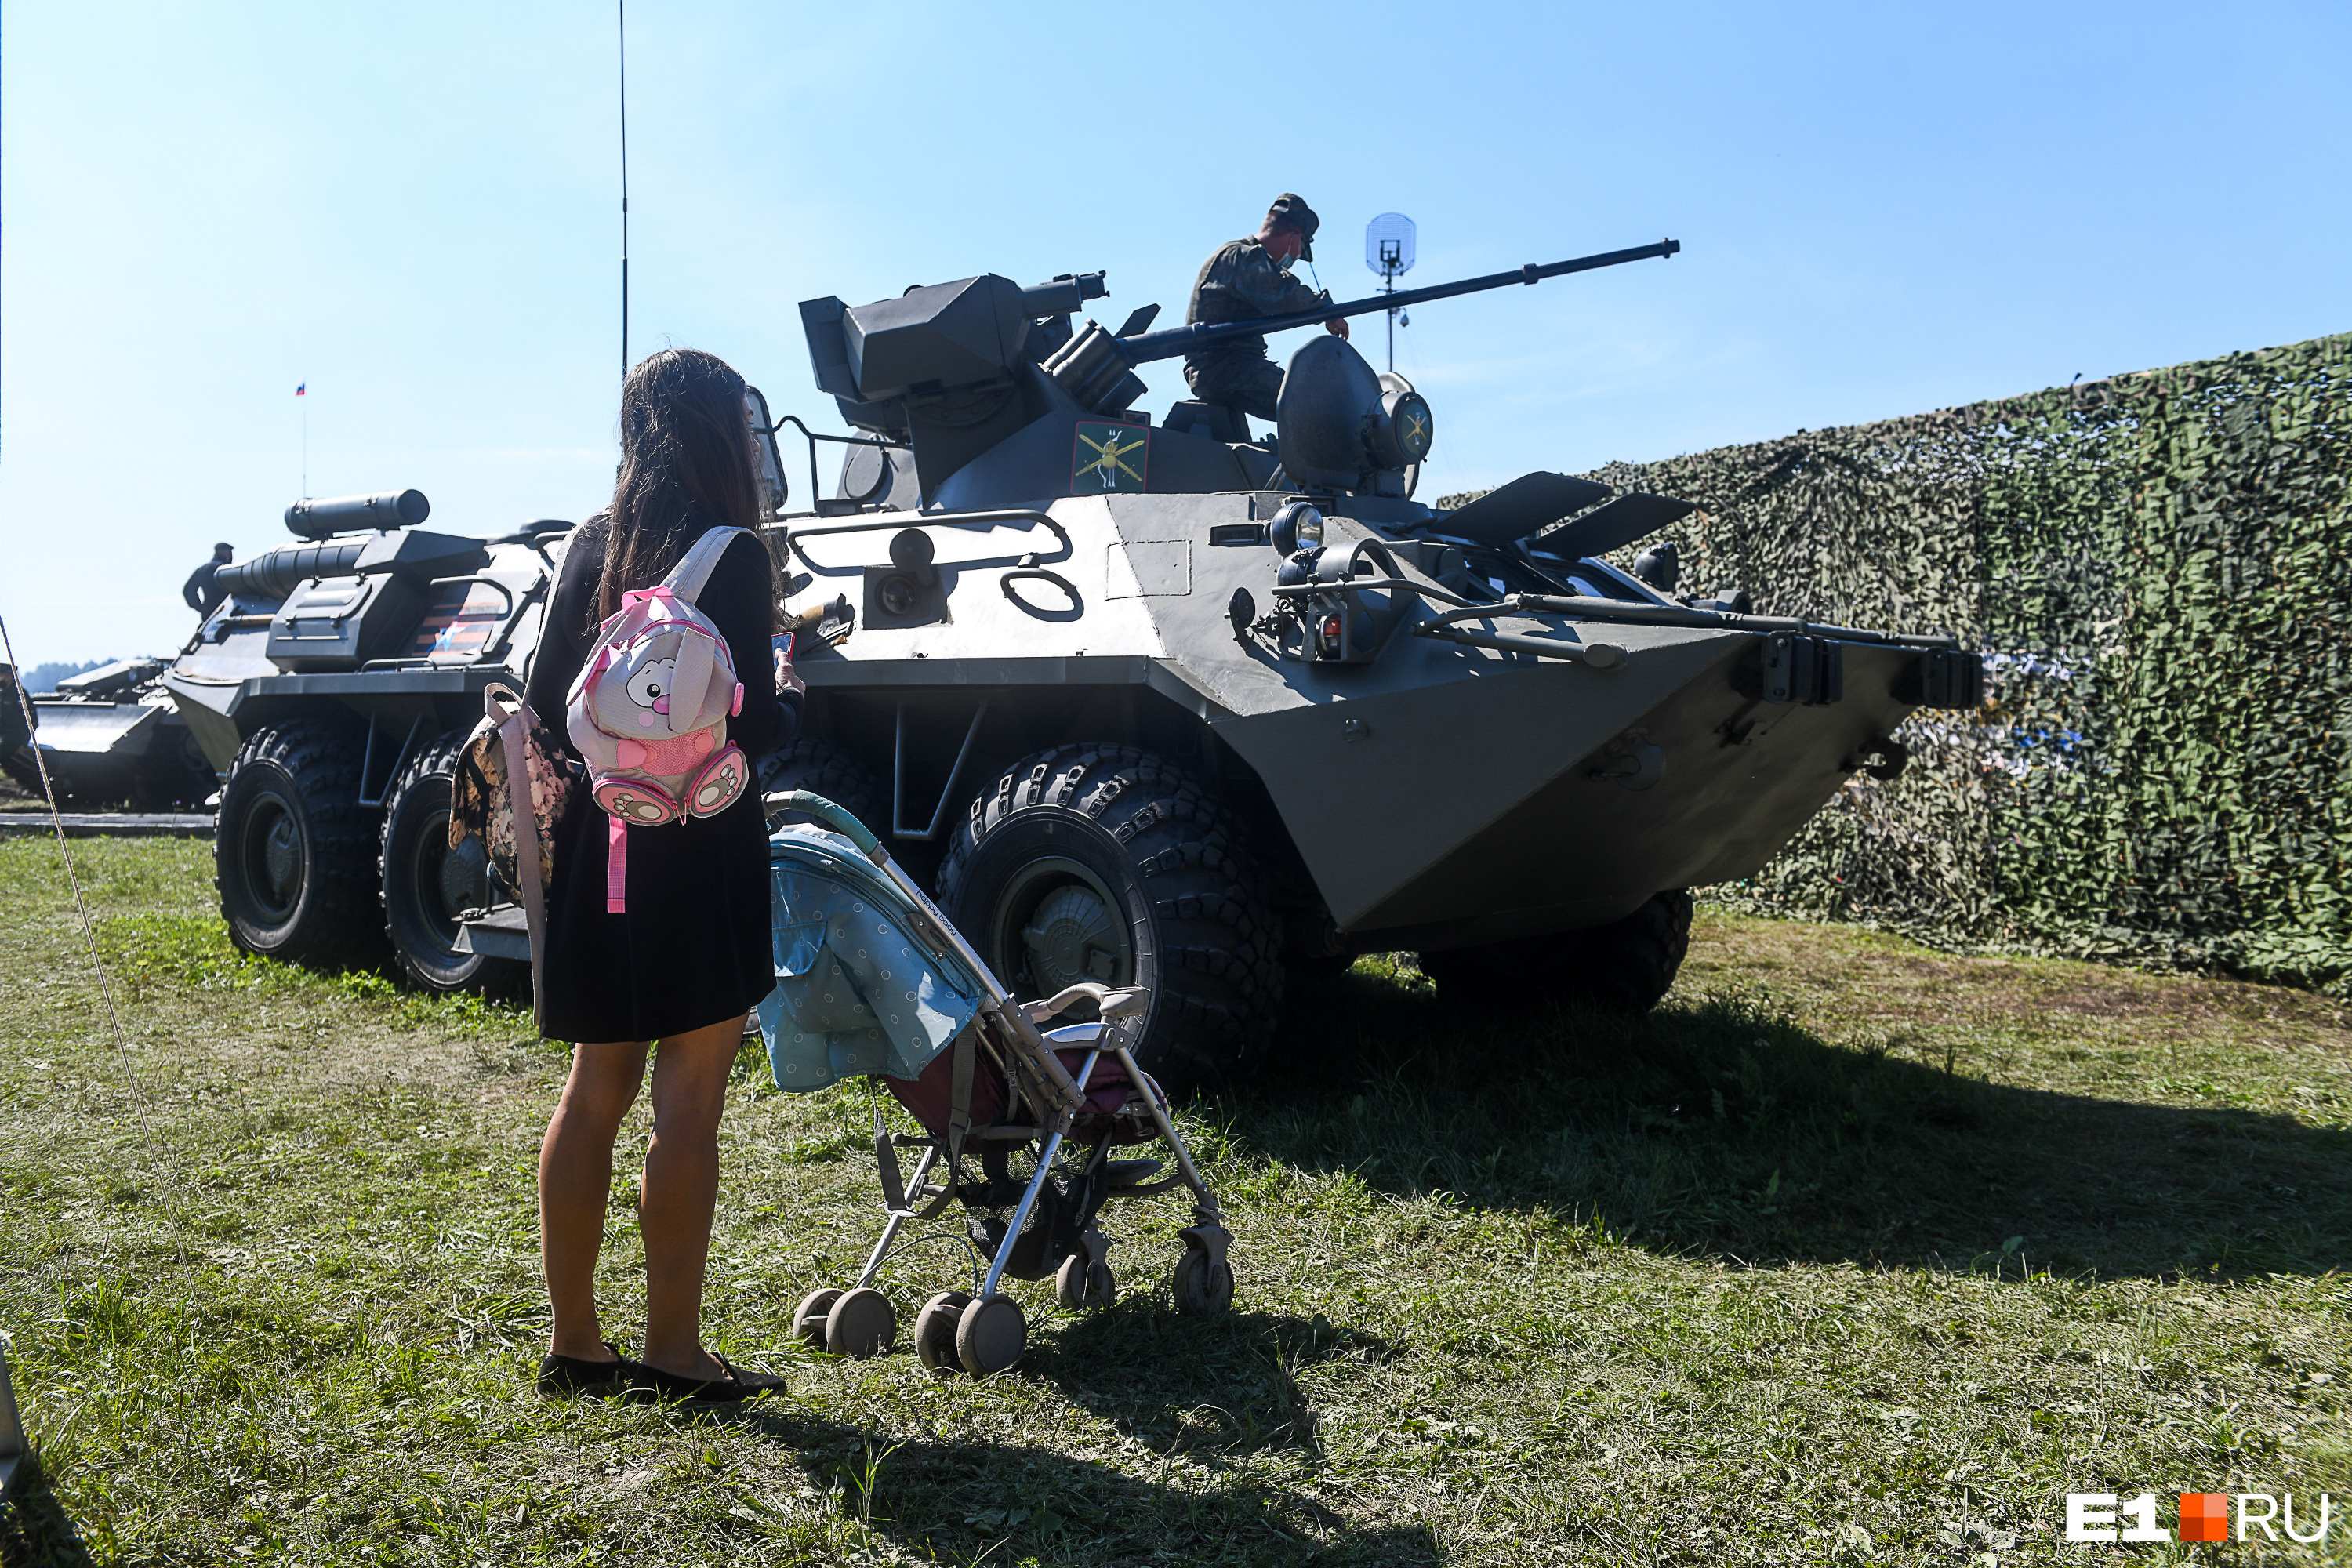 Некоторые девушки с интересом разглядывали мощные отечественные танки